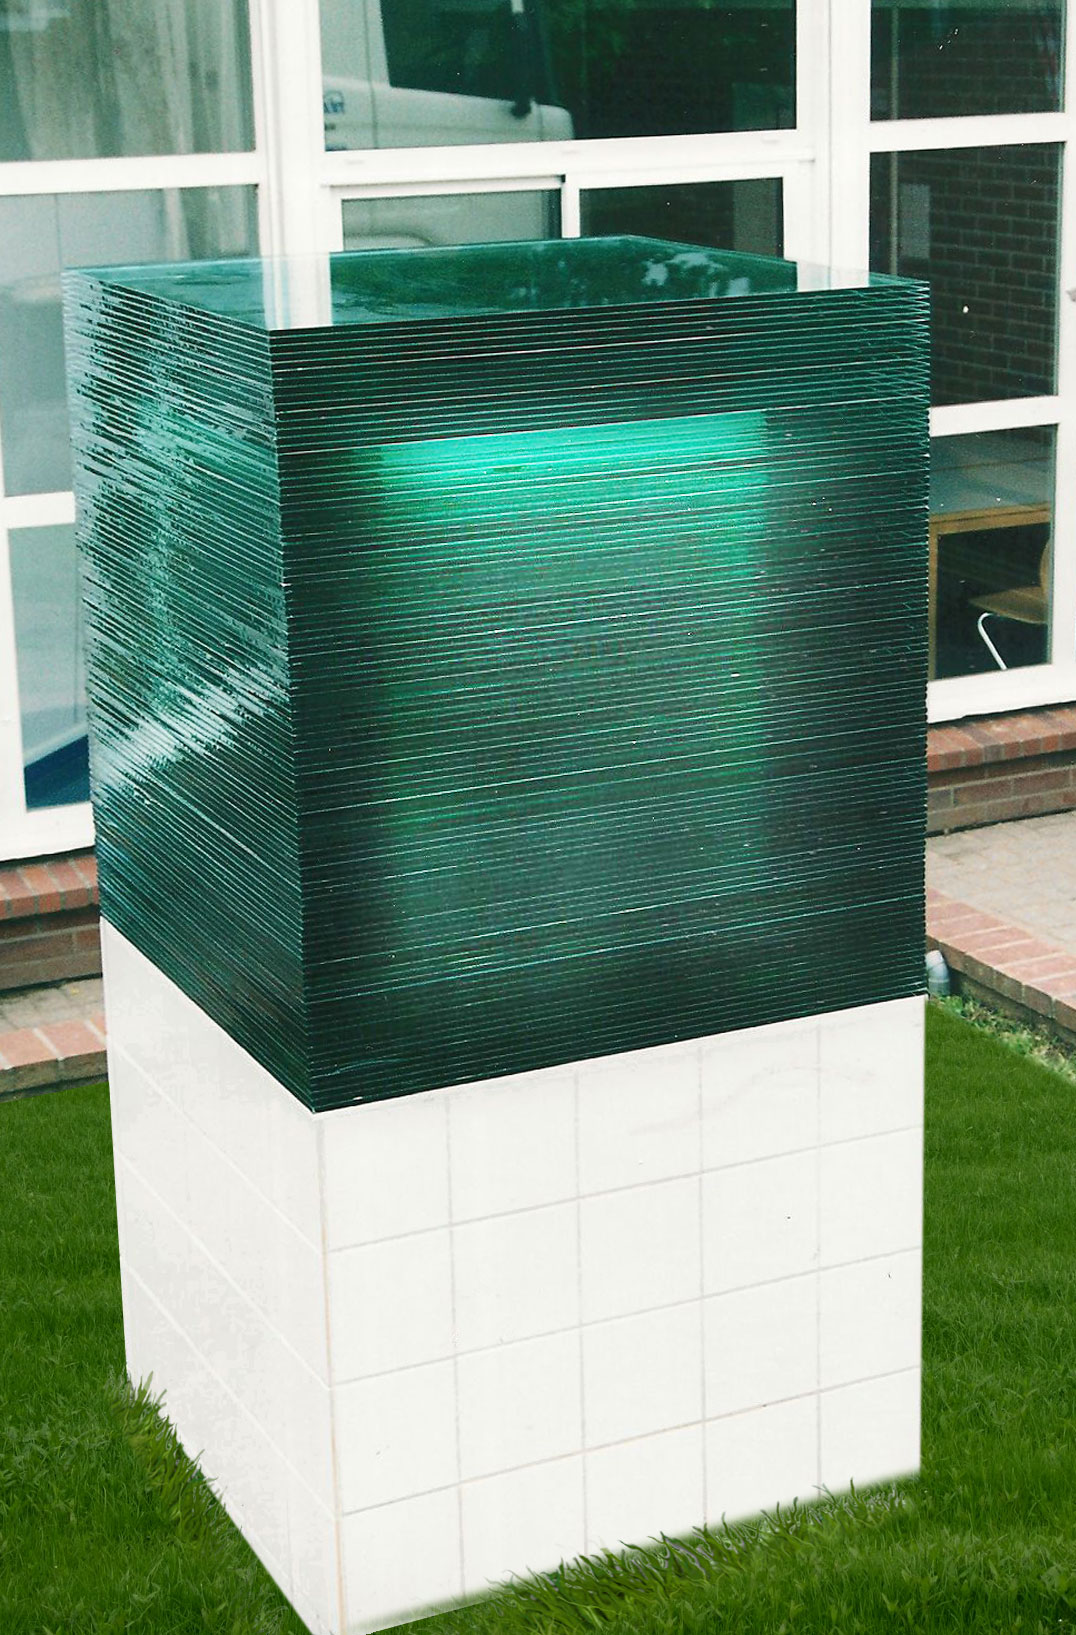 Sculpture cube verre - poids 1500 kgs - Vaucresson